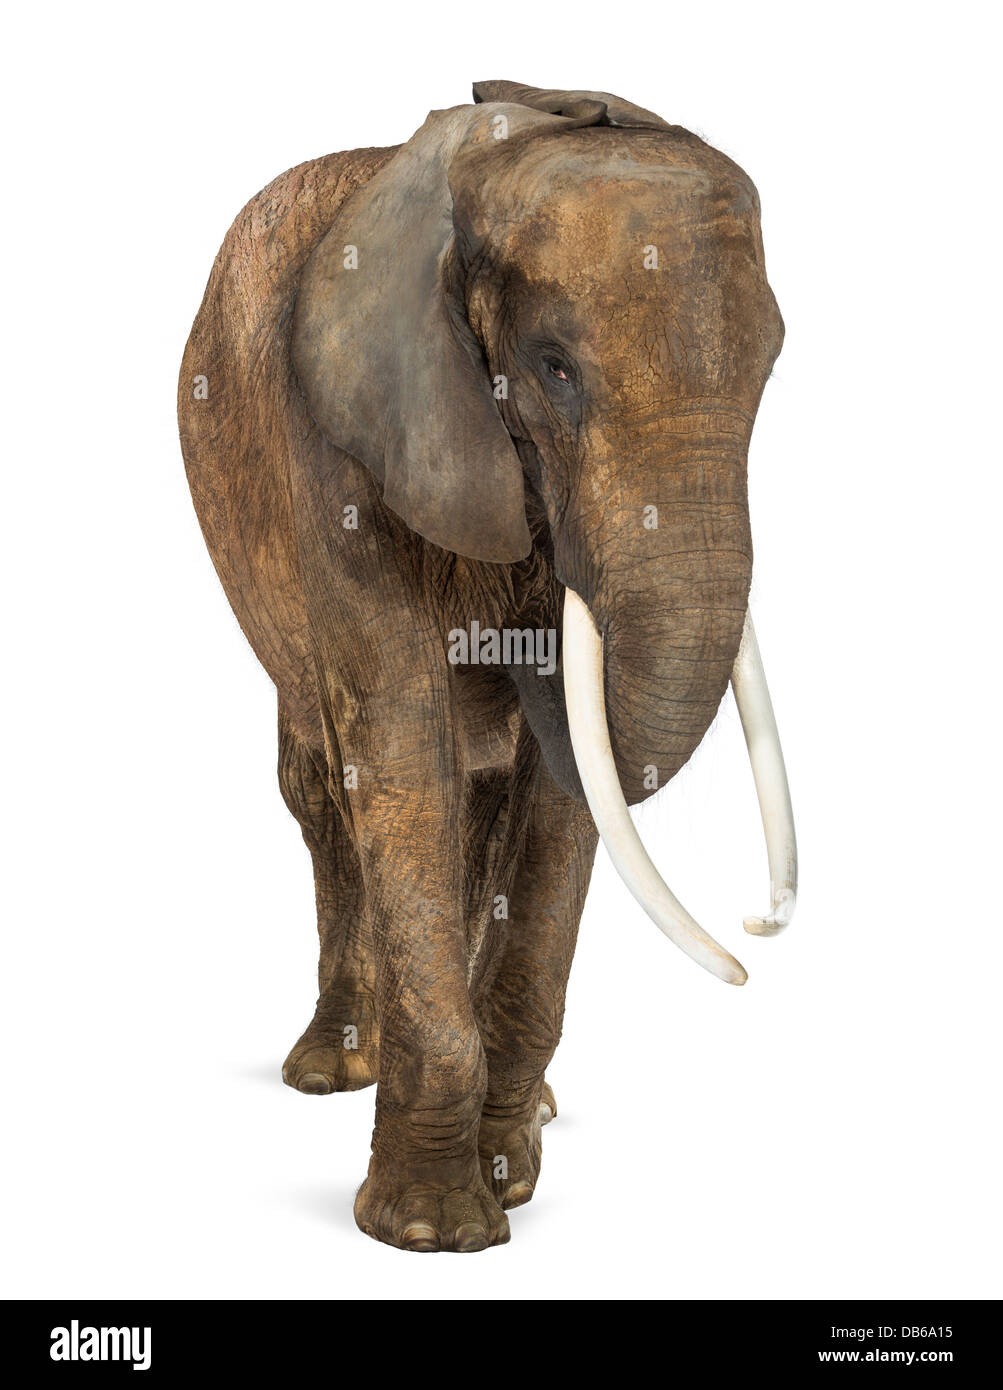 Vista frontale di elefante africano Loxodonta africana, contro uno sfondo bianco Foto Stock